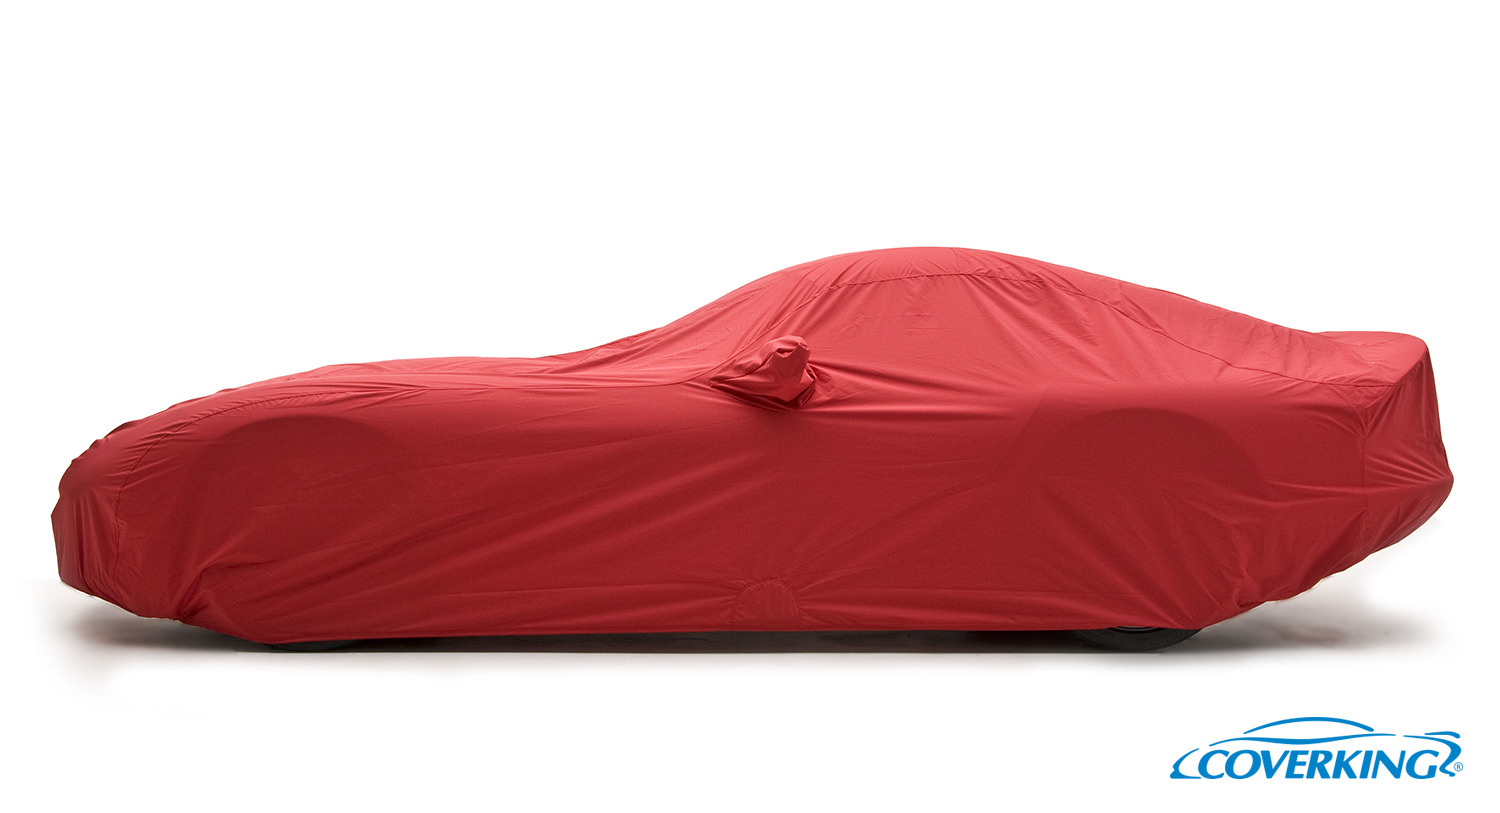 Coverking Stormproof Premium Custom Tailored Car Cover for Ferrari LaFerrari